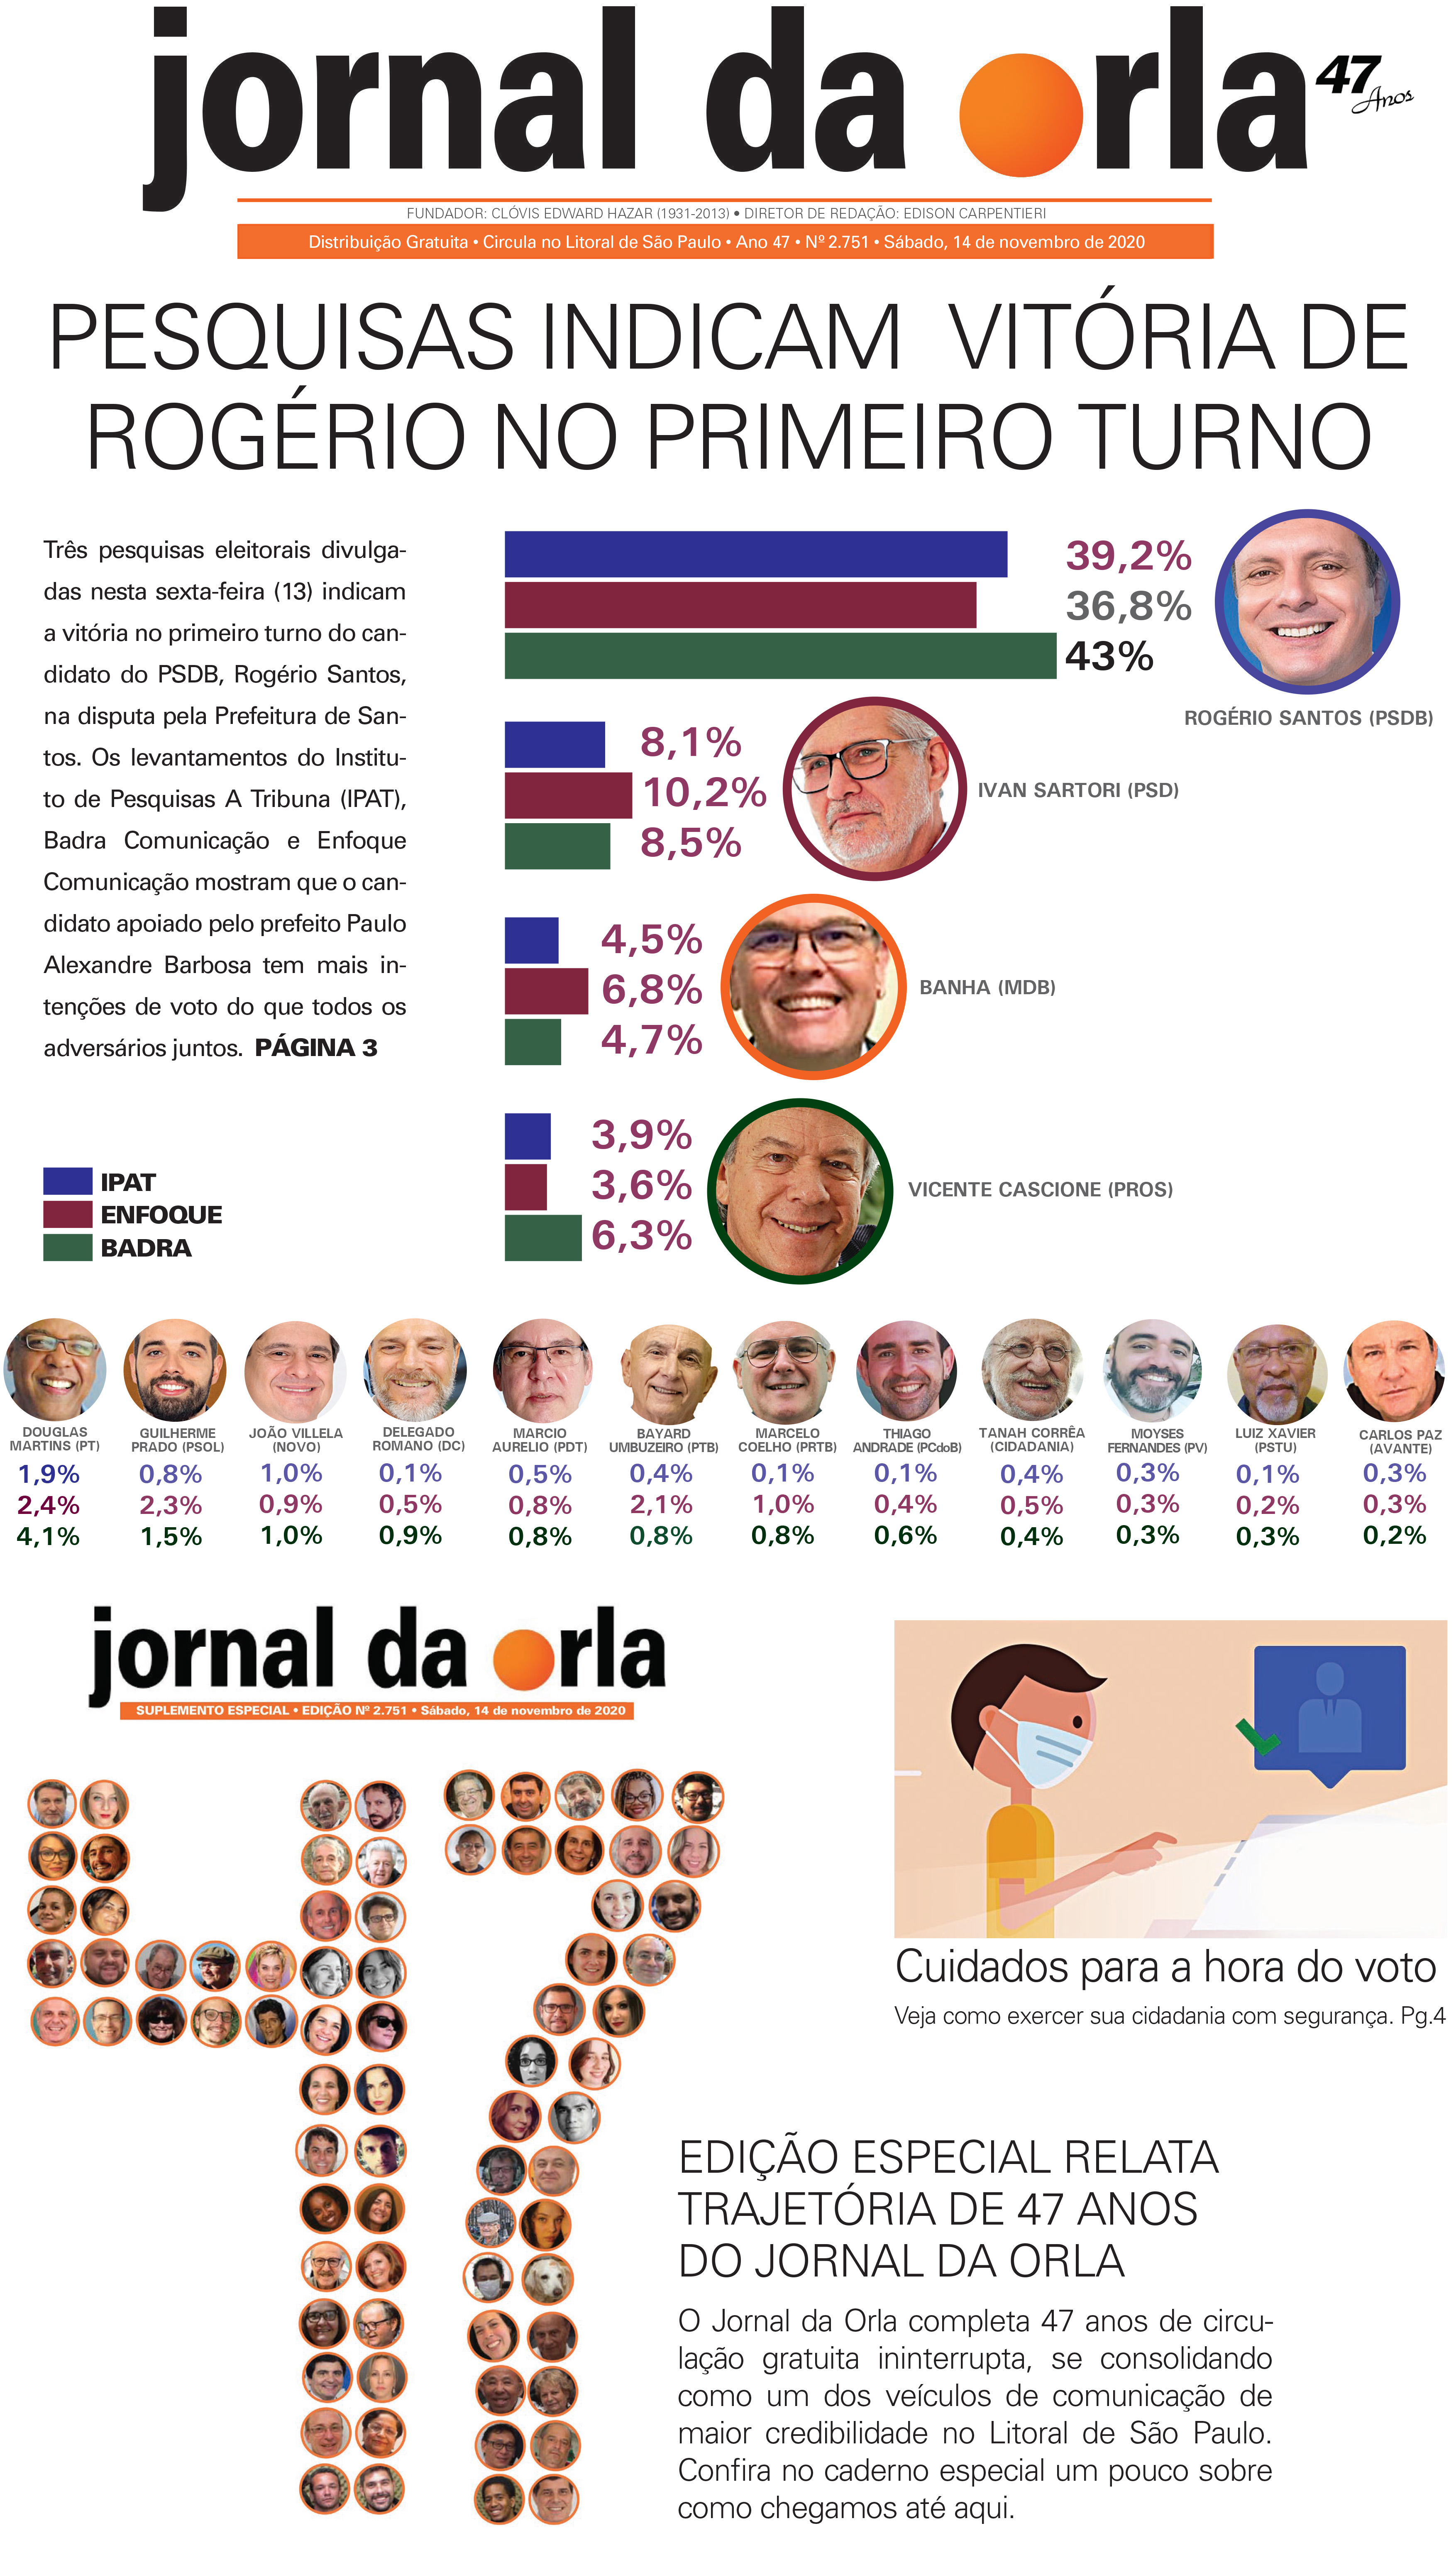 14/11/2020 | Jornal da Orla